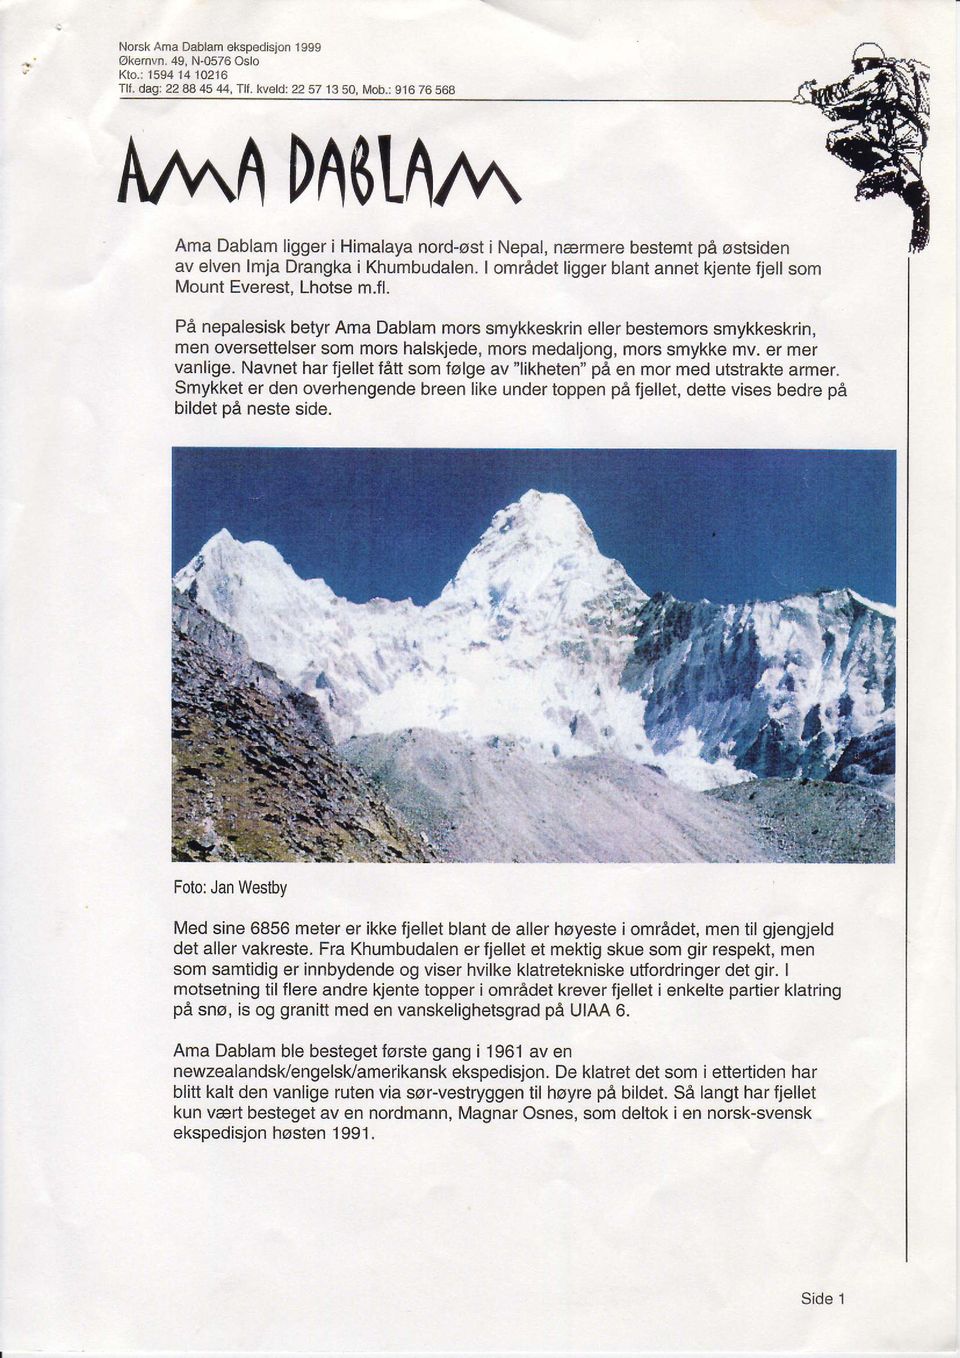 I omradet ligger blant annet kjente fjell som Mount Everest, Lhotse m.fl.